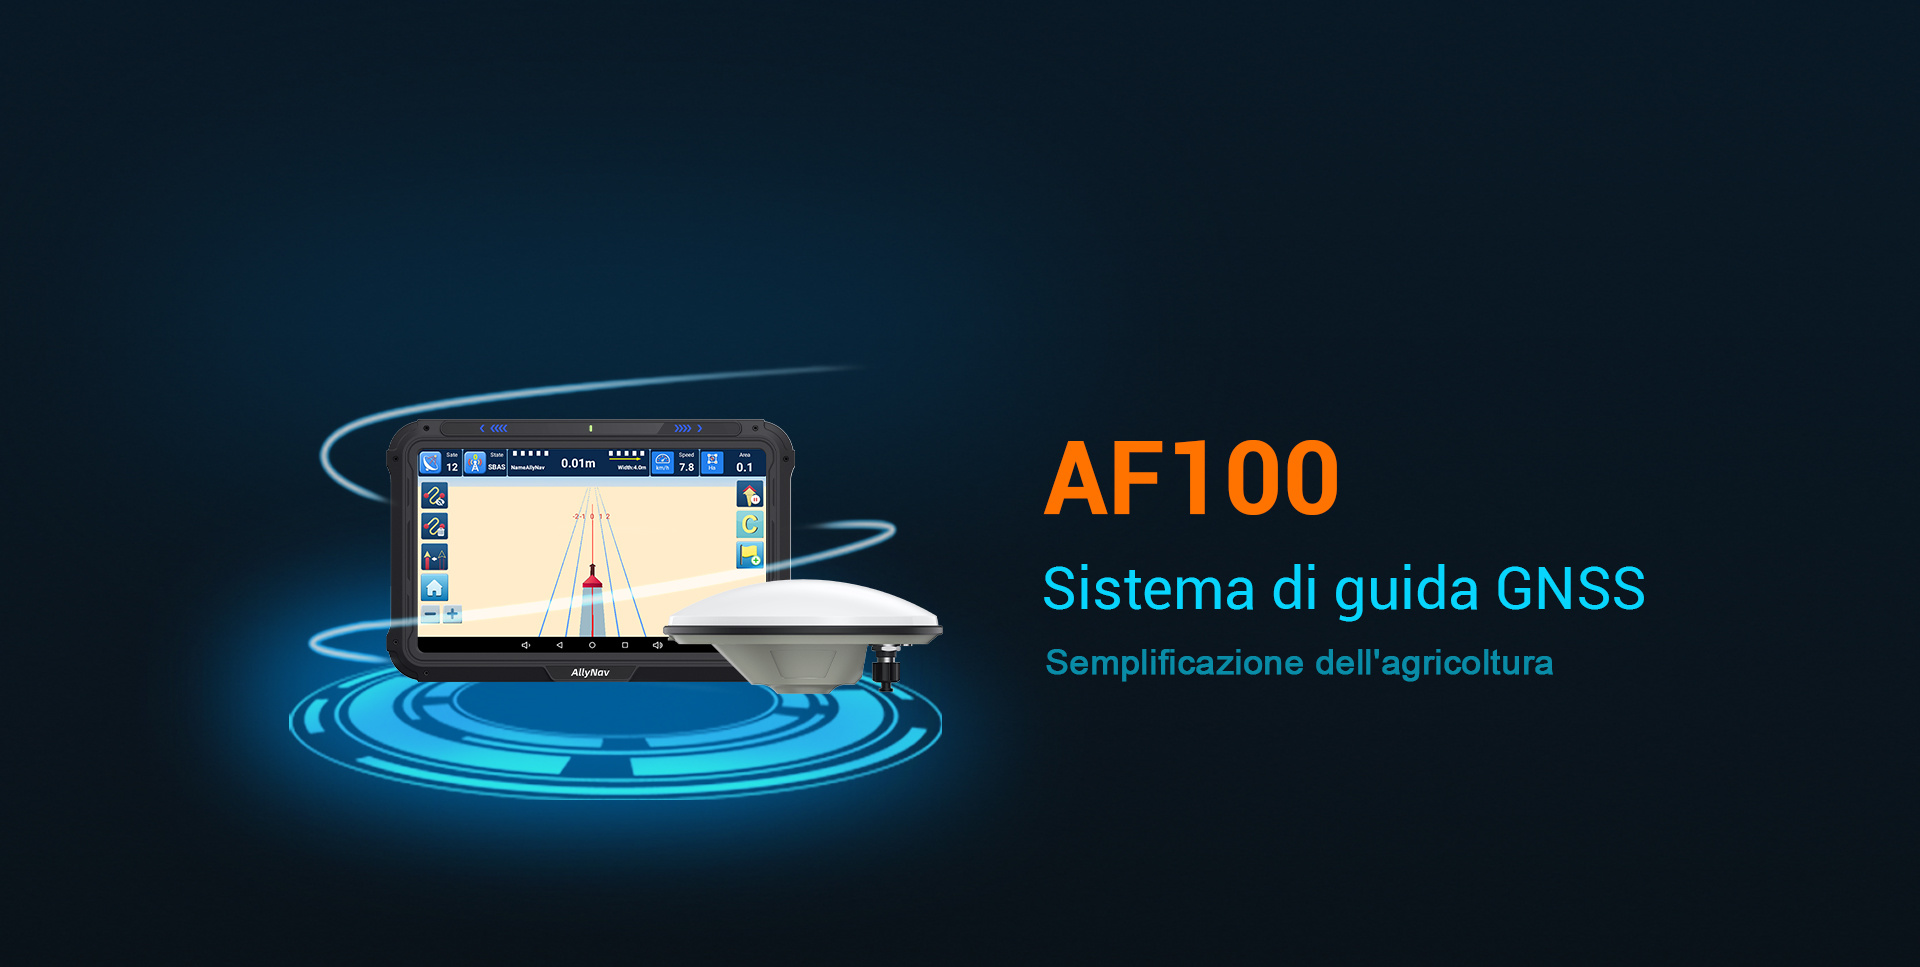 AF100 GNSS Guidance System